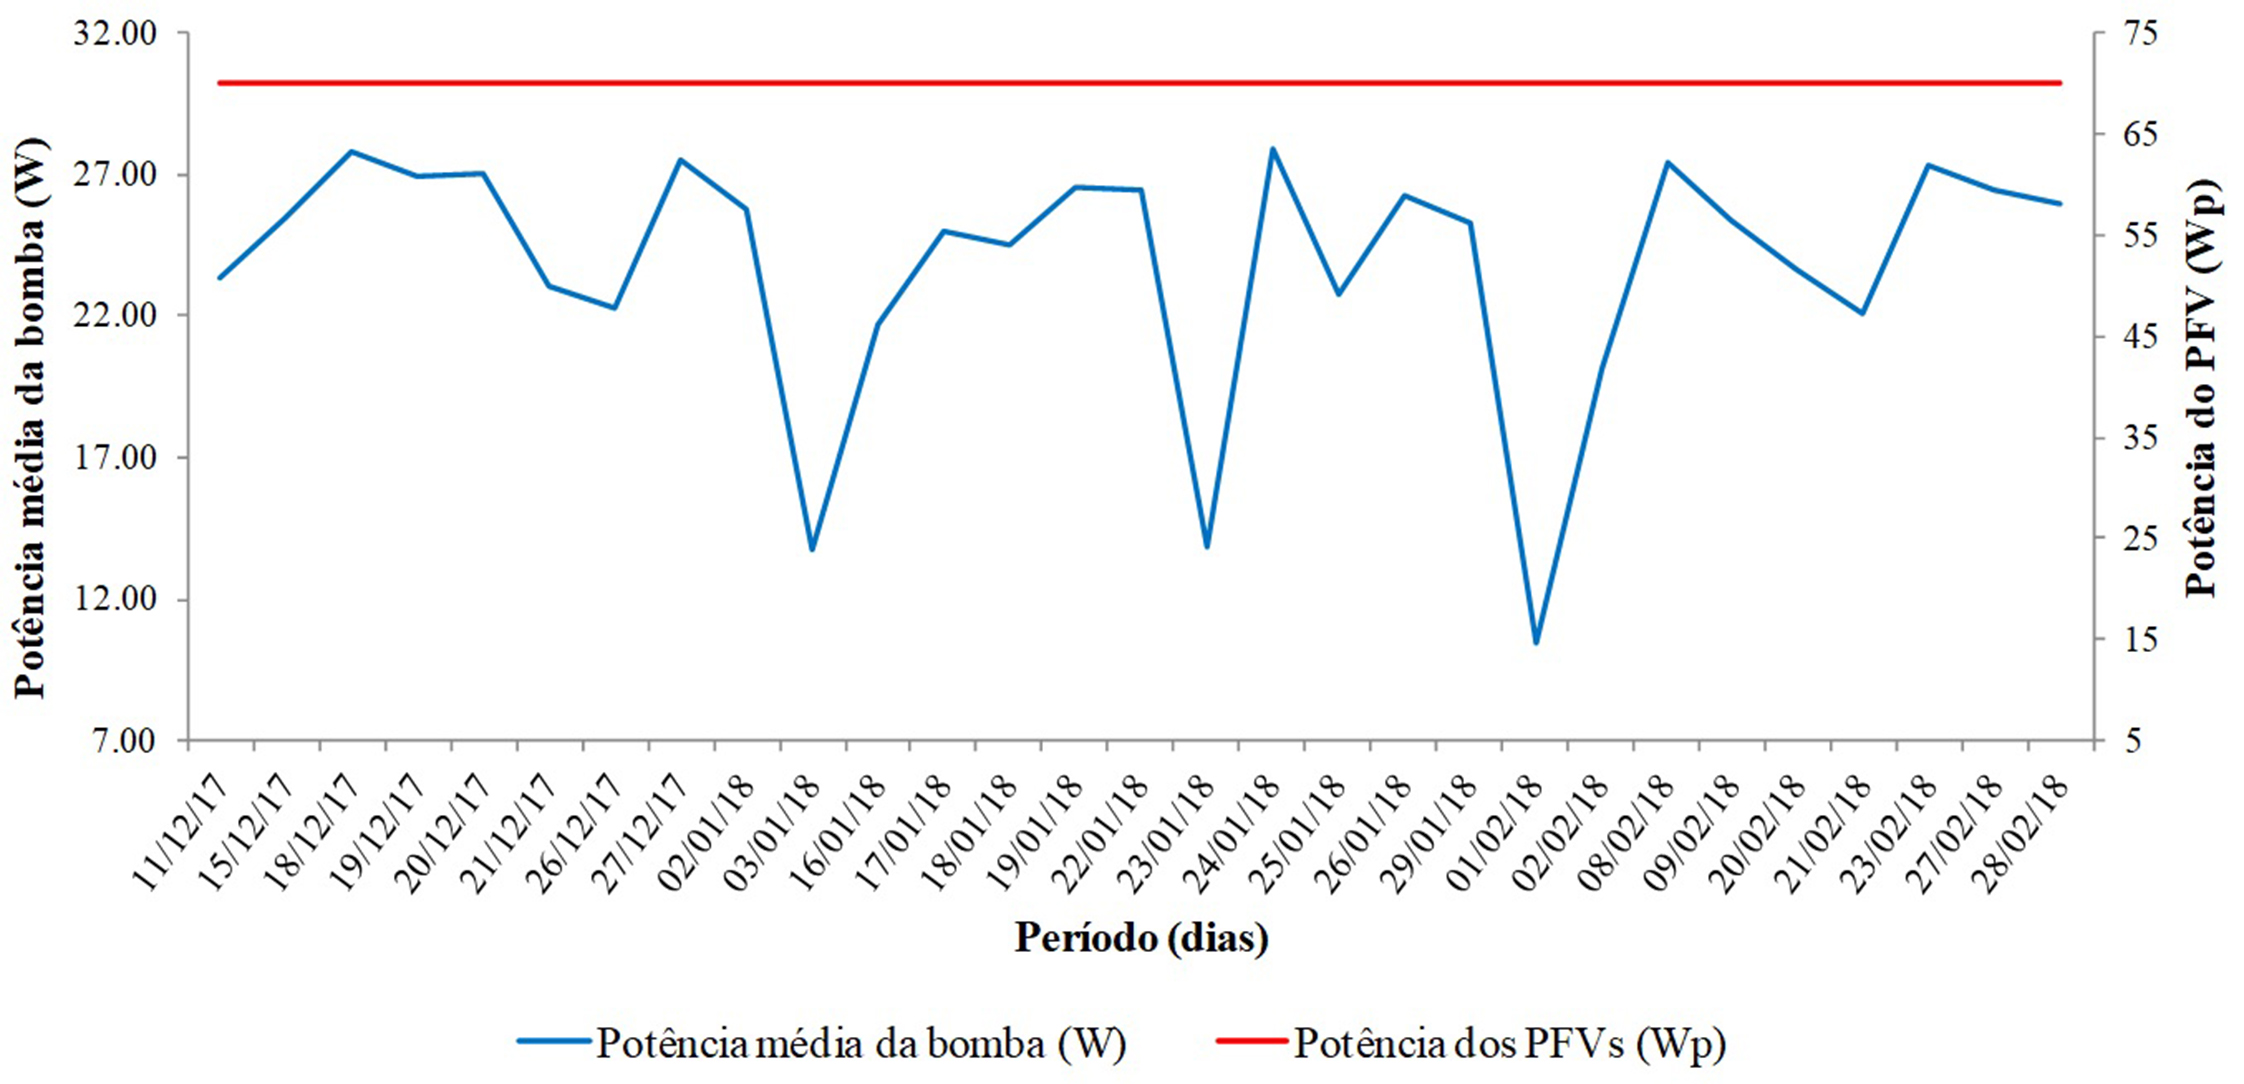 Gráfico de potência média diária da bomba (W) e potência nominal dos MFVs (WP)